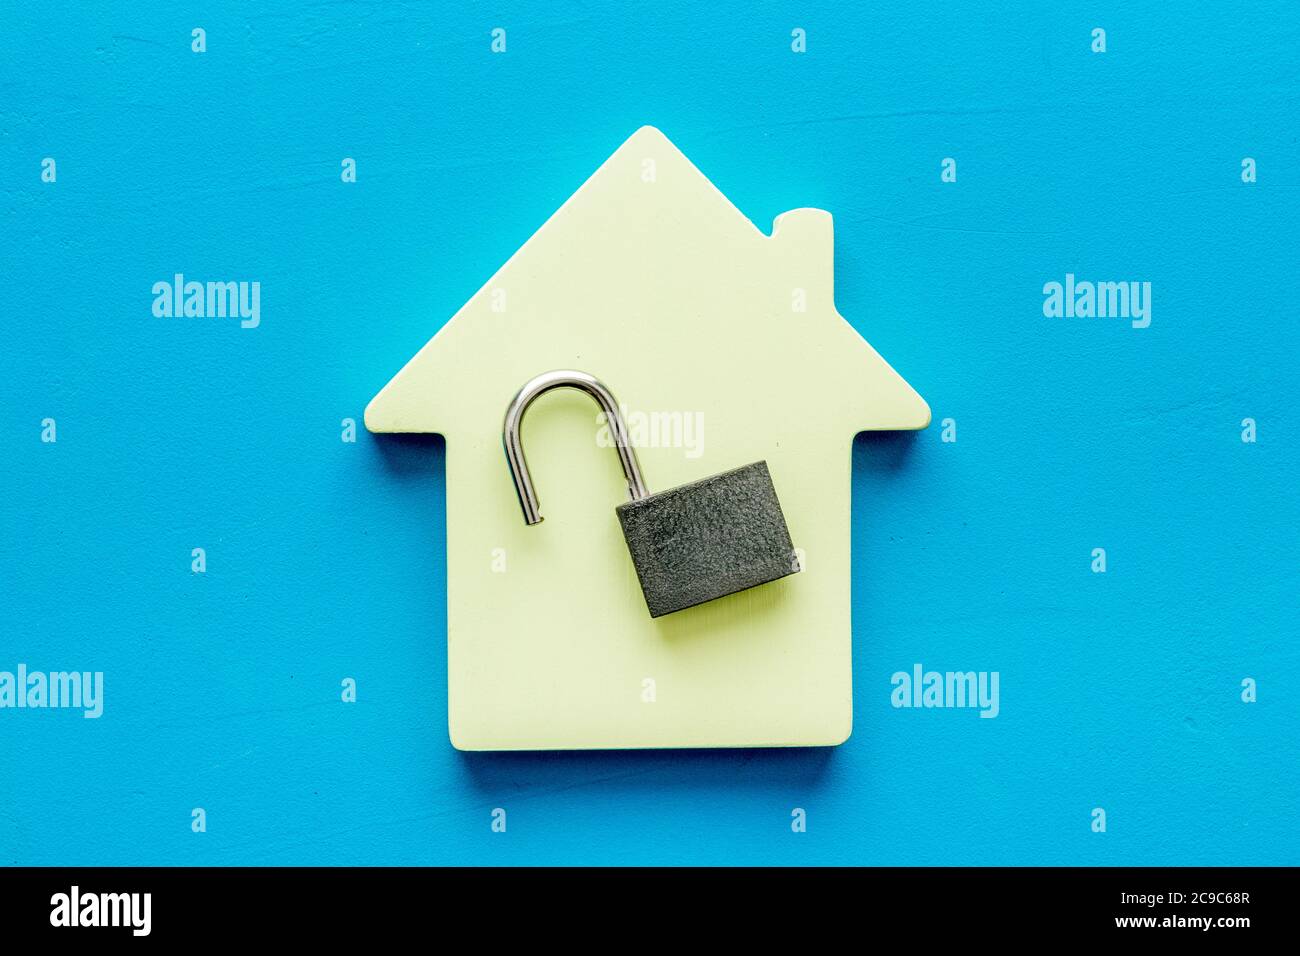 Concetto di sicurezza - serratura e figura della casa - sulla scrivania blu dall'alto verso il basso Foto Stock